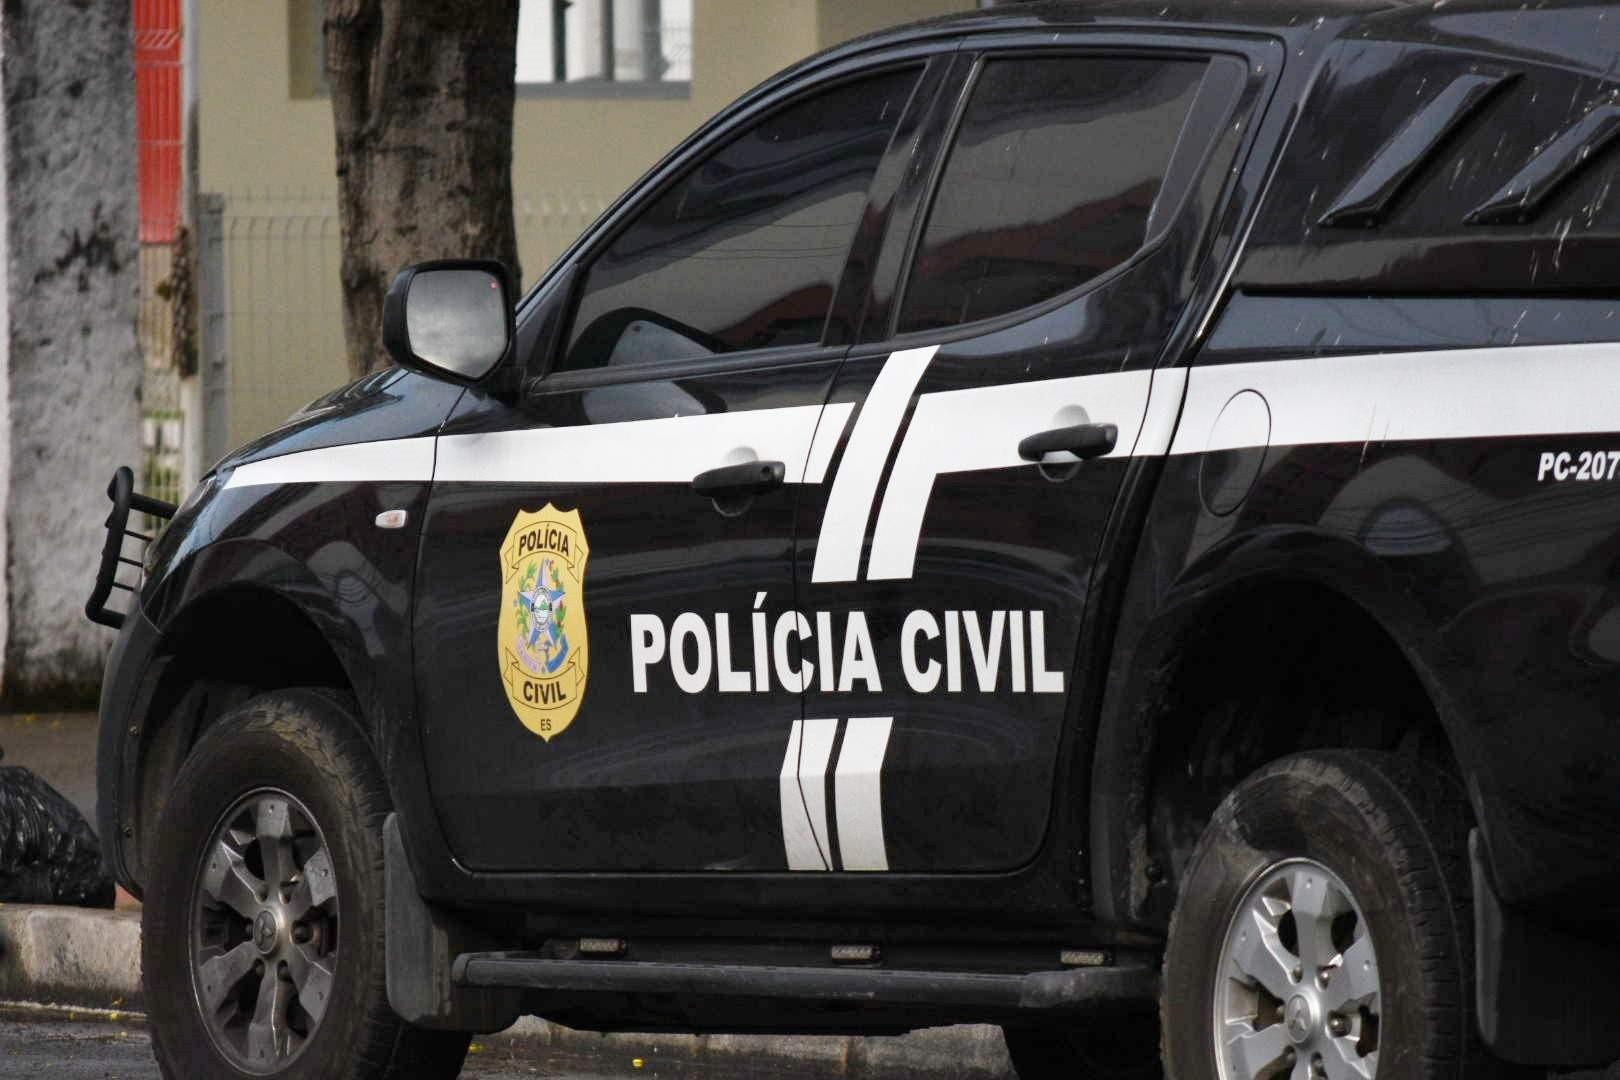 Mãe é presa por suspeita de estuprar o filho de 2 anos em Linhares, ES